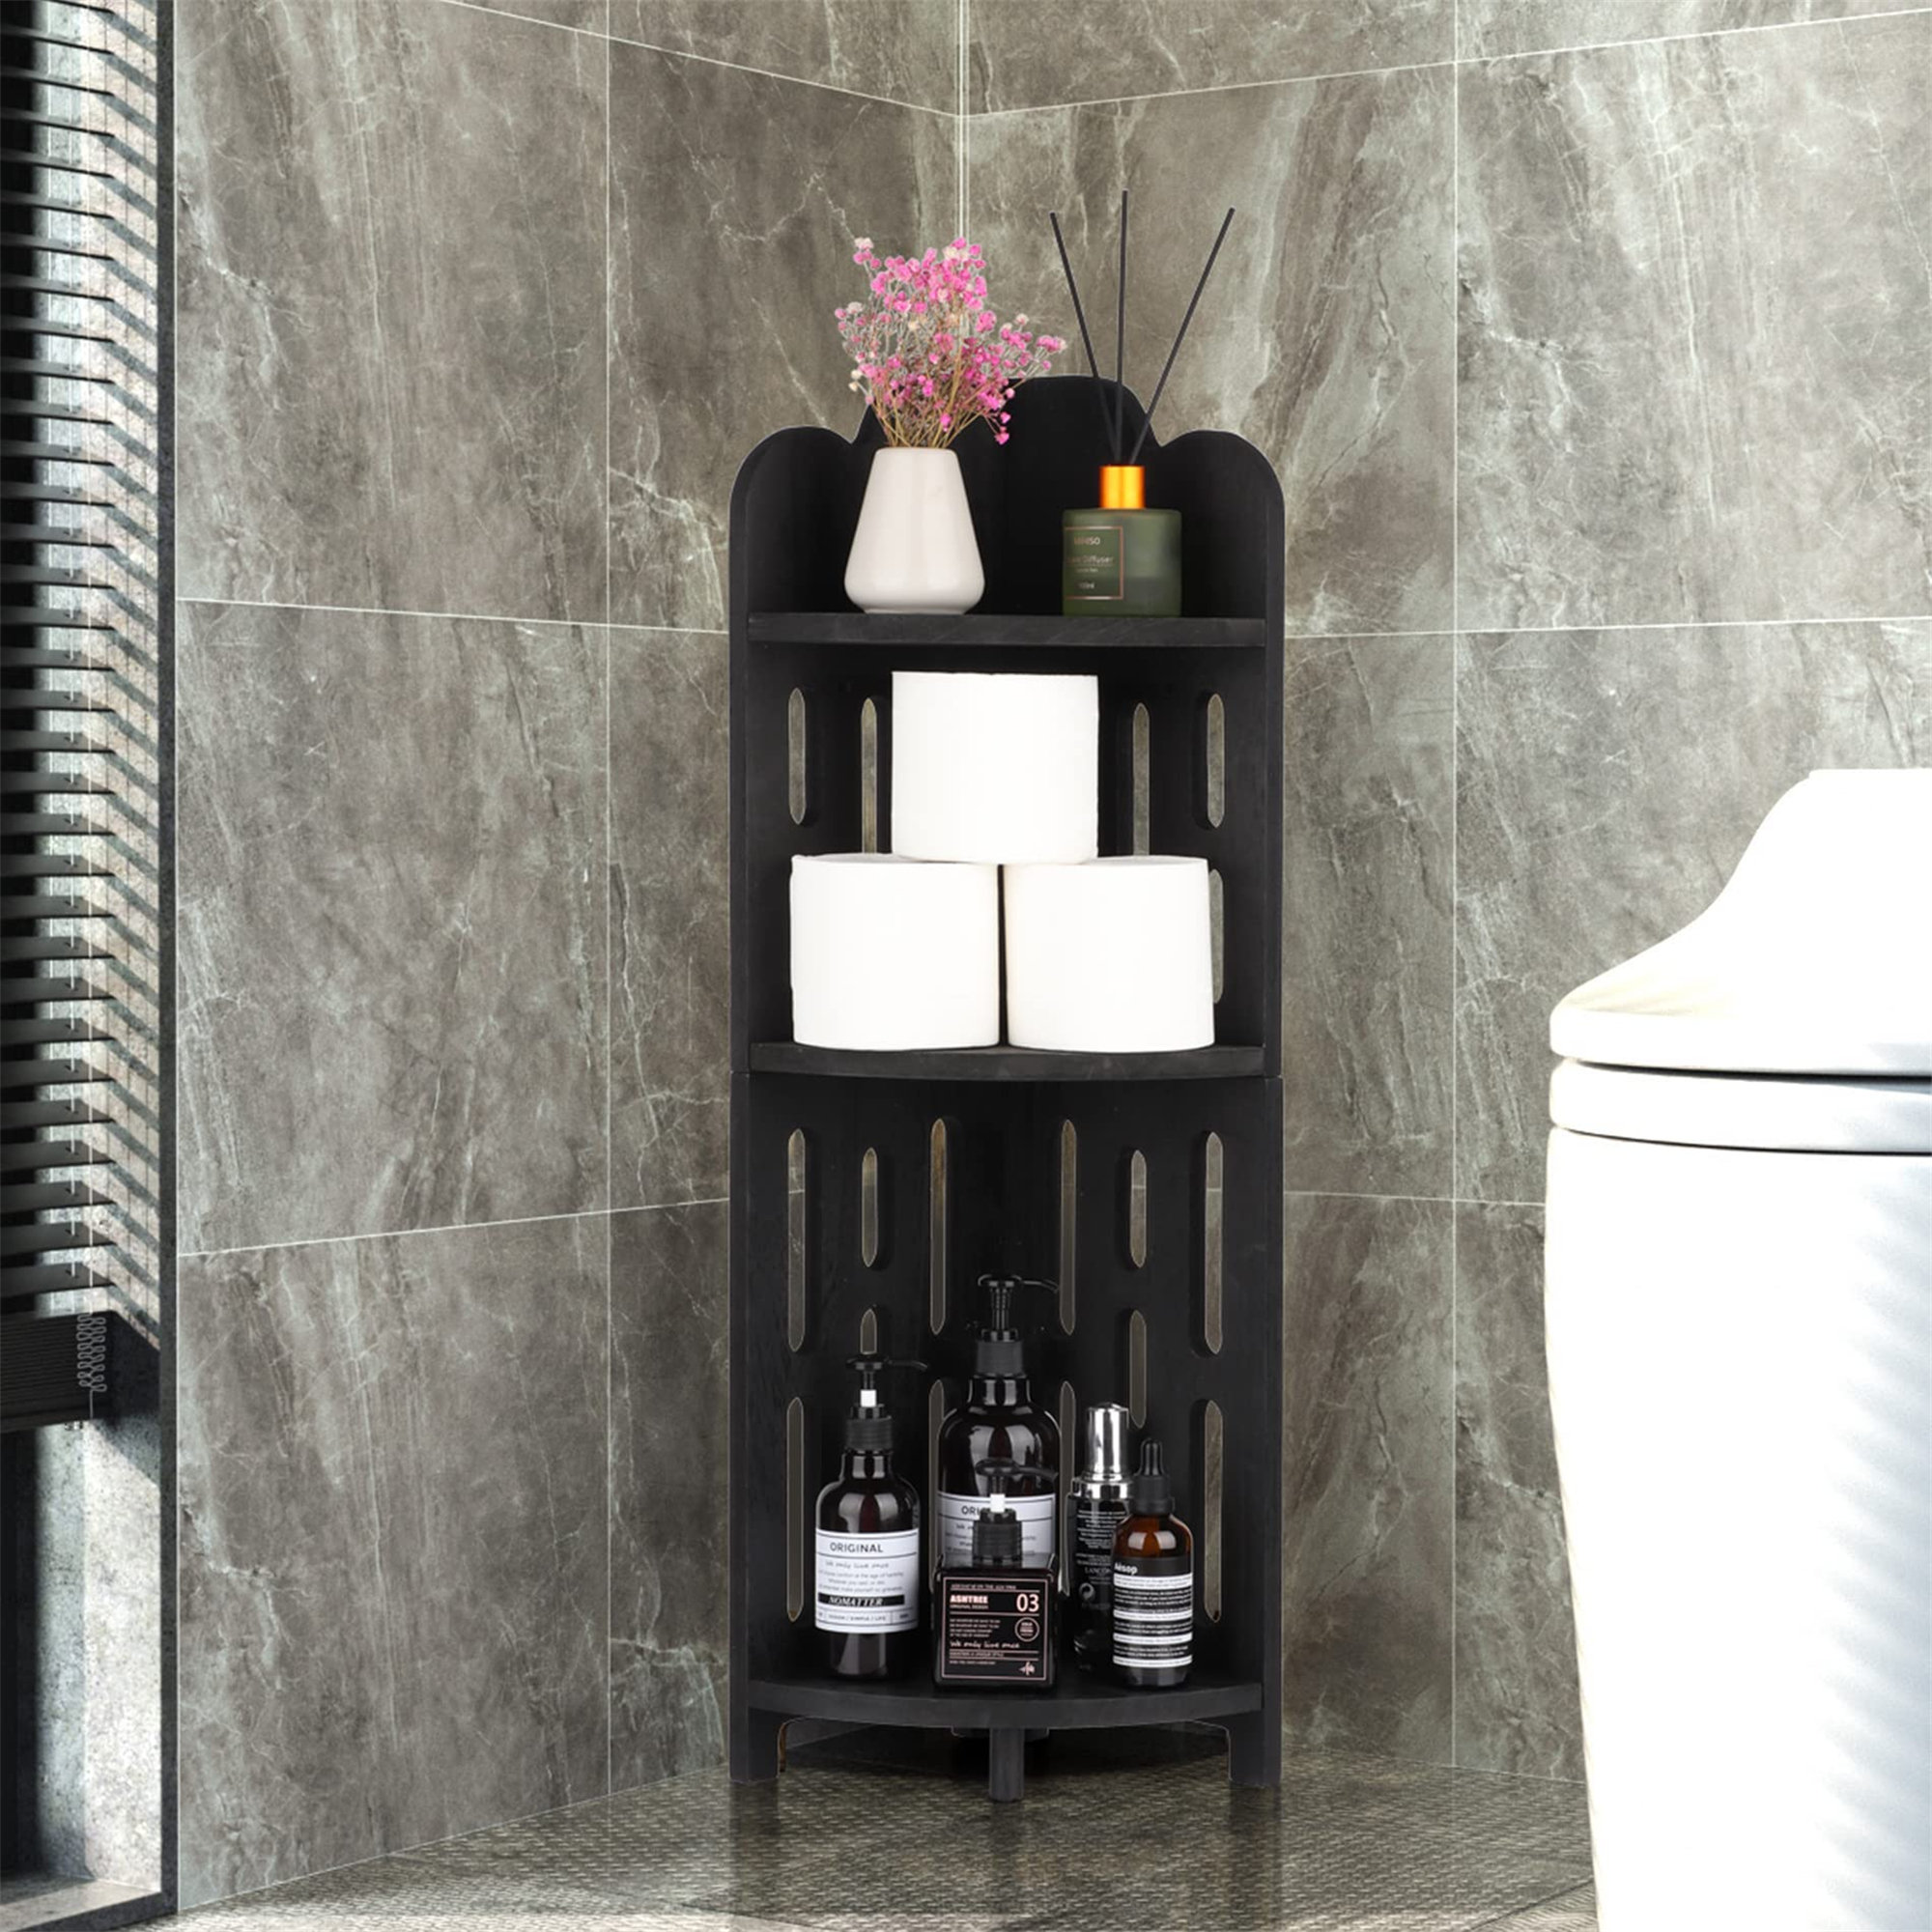 https://assets.wfcdn.com/im/87989820/compr-r85/2133/213320757/bathroom-corner-shelf-stand-3-tier-solid-wood-display-shelf-for-narrow-space-shower-corner-shelf-plant-stand-nightstand-for-living-room-bedroom-home-office-elegant-black.jpg